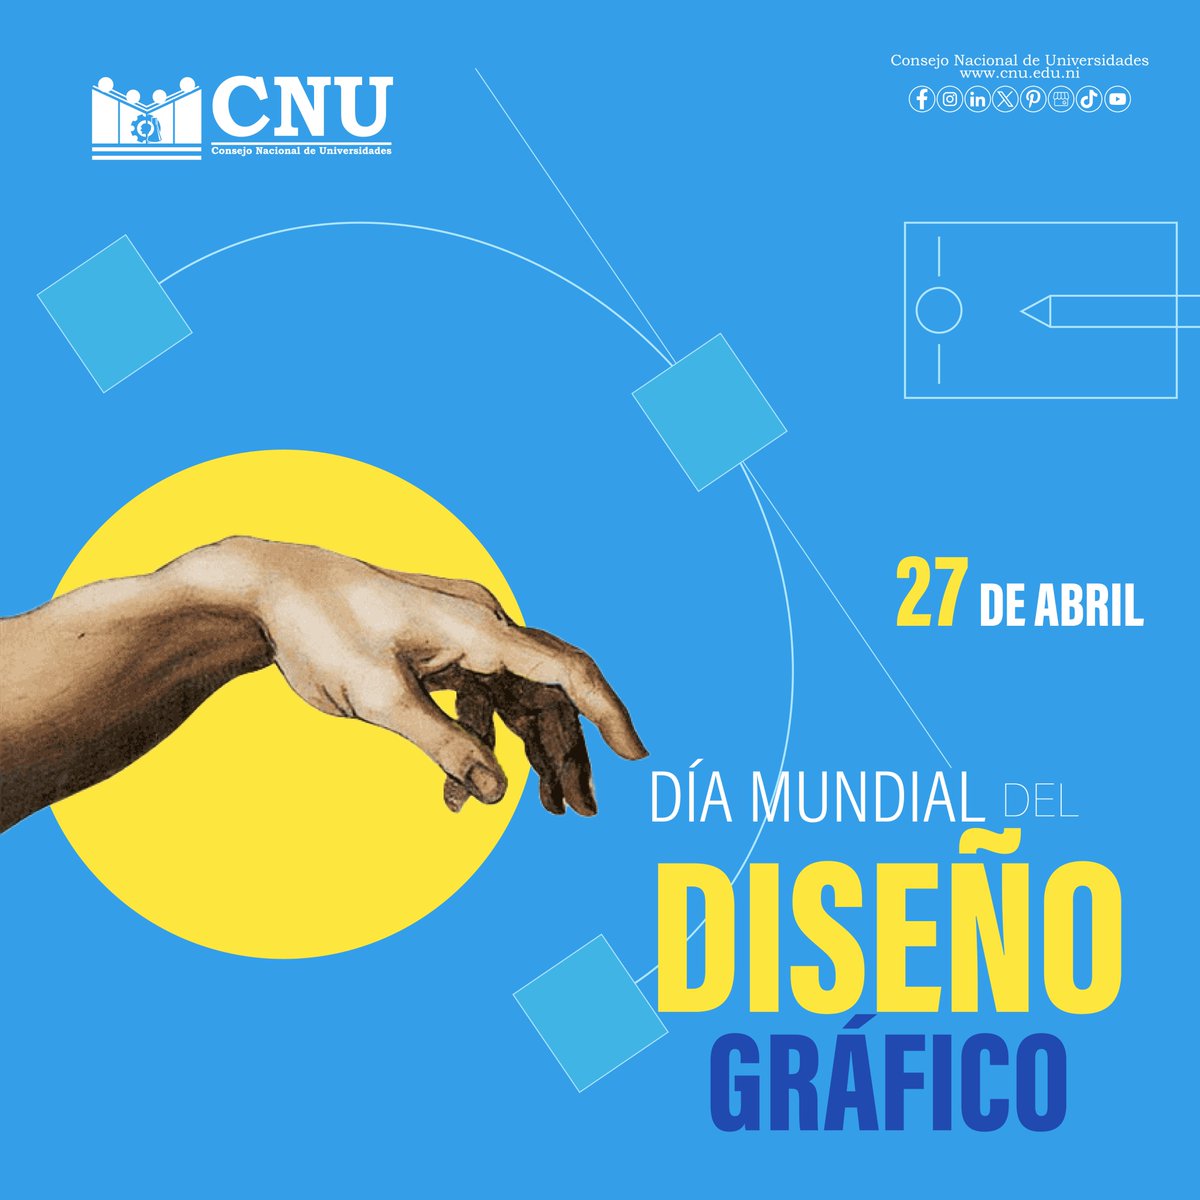 🧑‍💻📝🖌 || #DISEÑO Hoy celebramos el poder de la creatividad visual en ocasión del Día Mundial del Diseño Gráfico. A todos los diseñadores que dan vida a ideas y emociones a través de imágenes, ¡felicidades por su increíble labor! #CNU #Nicaragua #CalidadEducativa